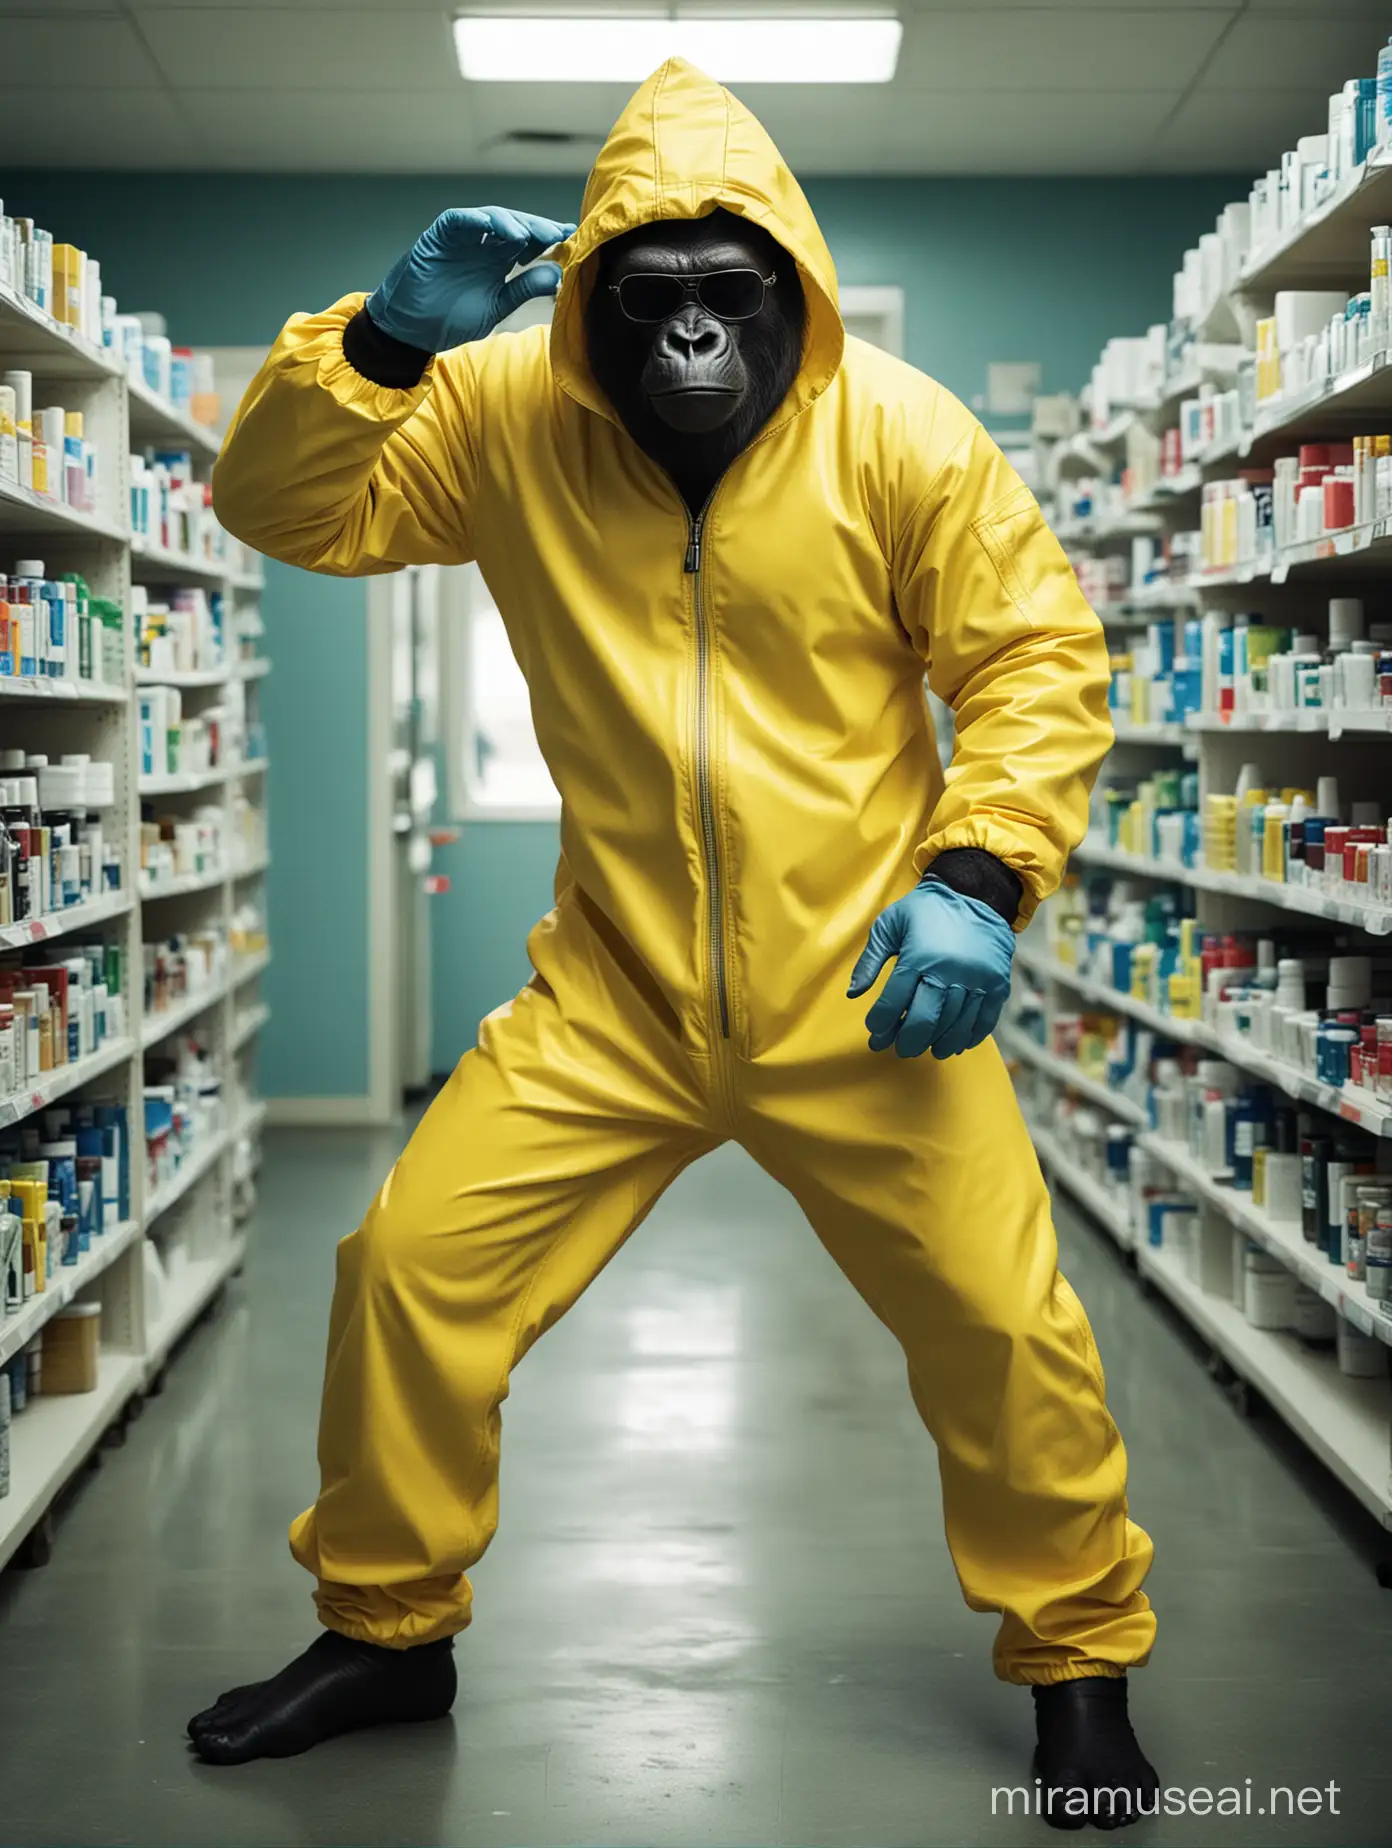 Gorila vestido con un mameluco amarillo como el de la serie Breaking Bad. Lleva gafas de sol oscuras de  marco negro. La capucha le cubre la cabeza y usa guantes de latex azul claro. Esta bailando en el medio de la farmacia rodeado de medicamentos. Estilo fotografico